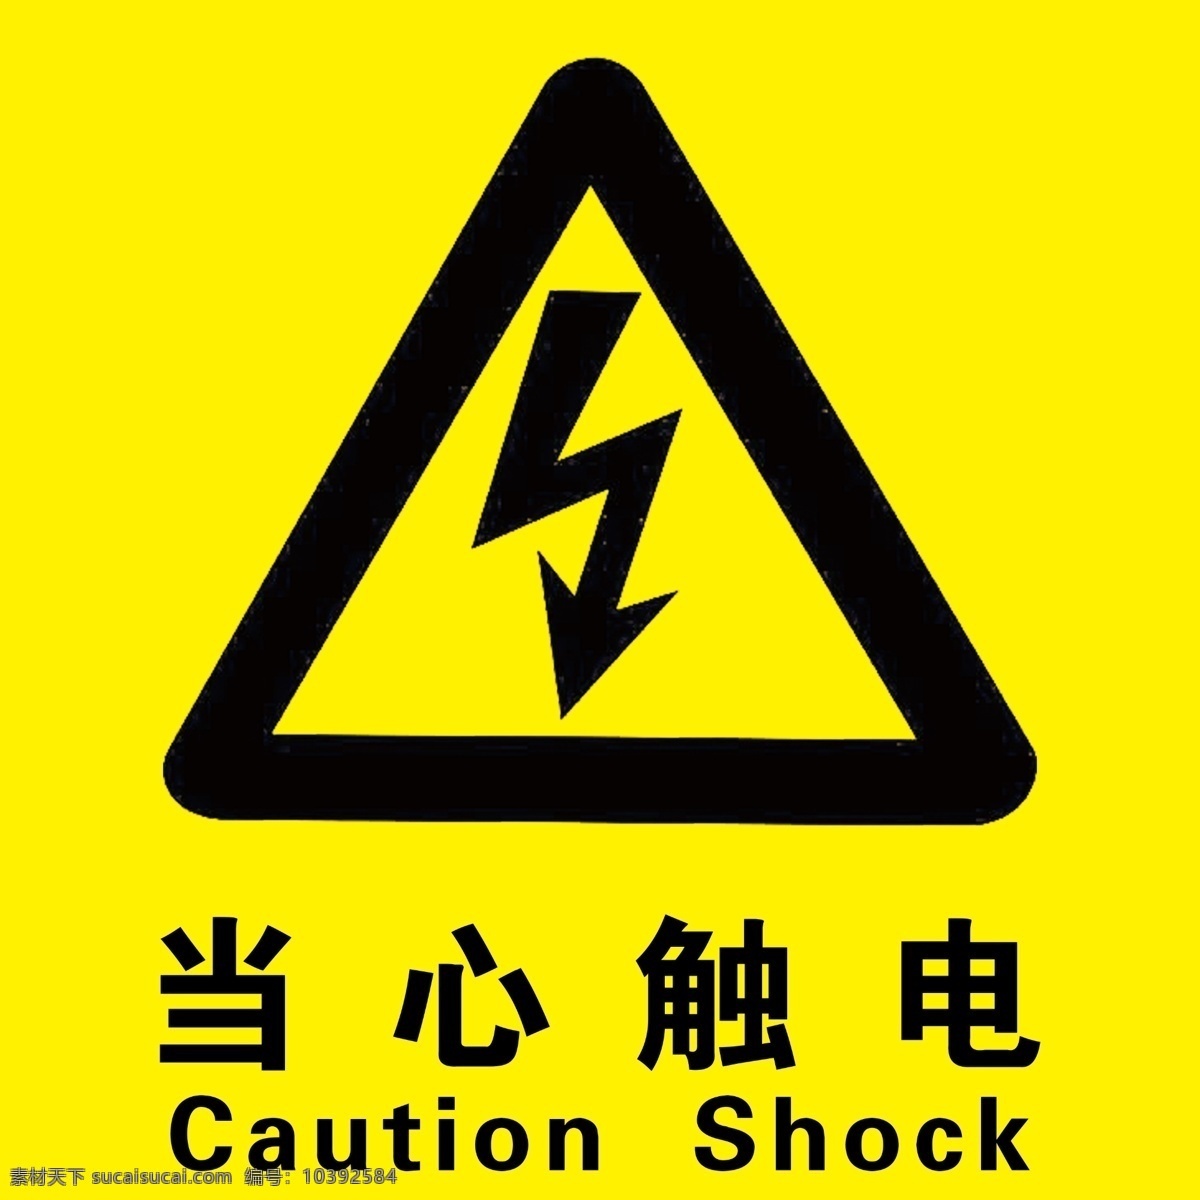 当心触电 小心触电 警告标志 温馨提示 禁止标志 标志图标 公共标识标志